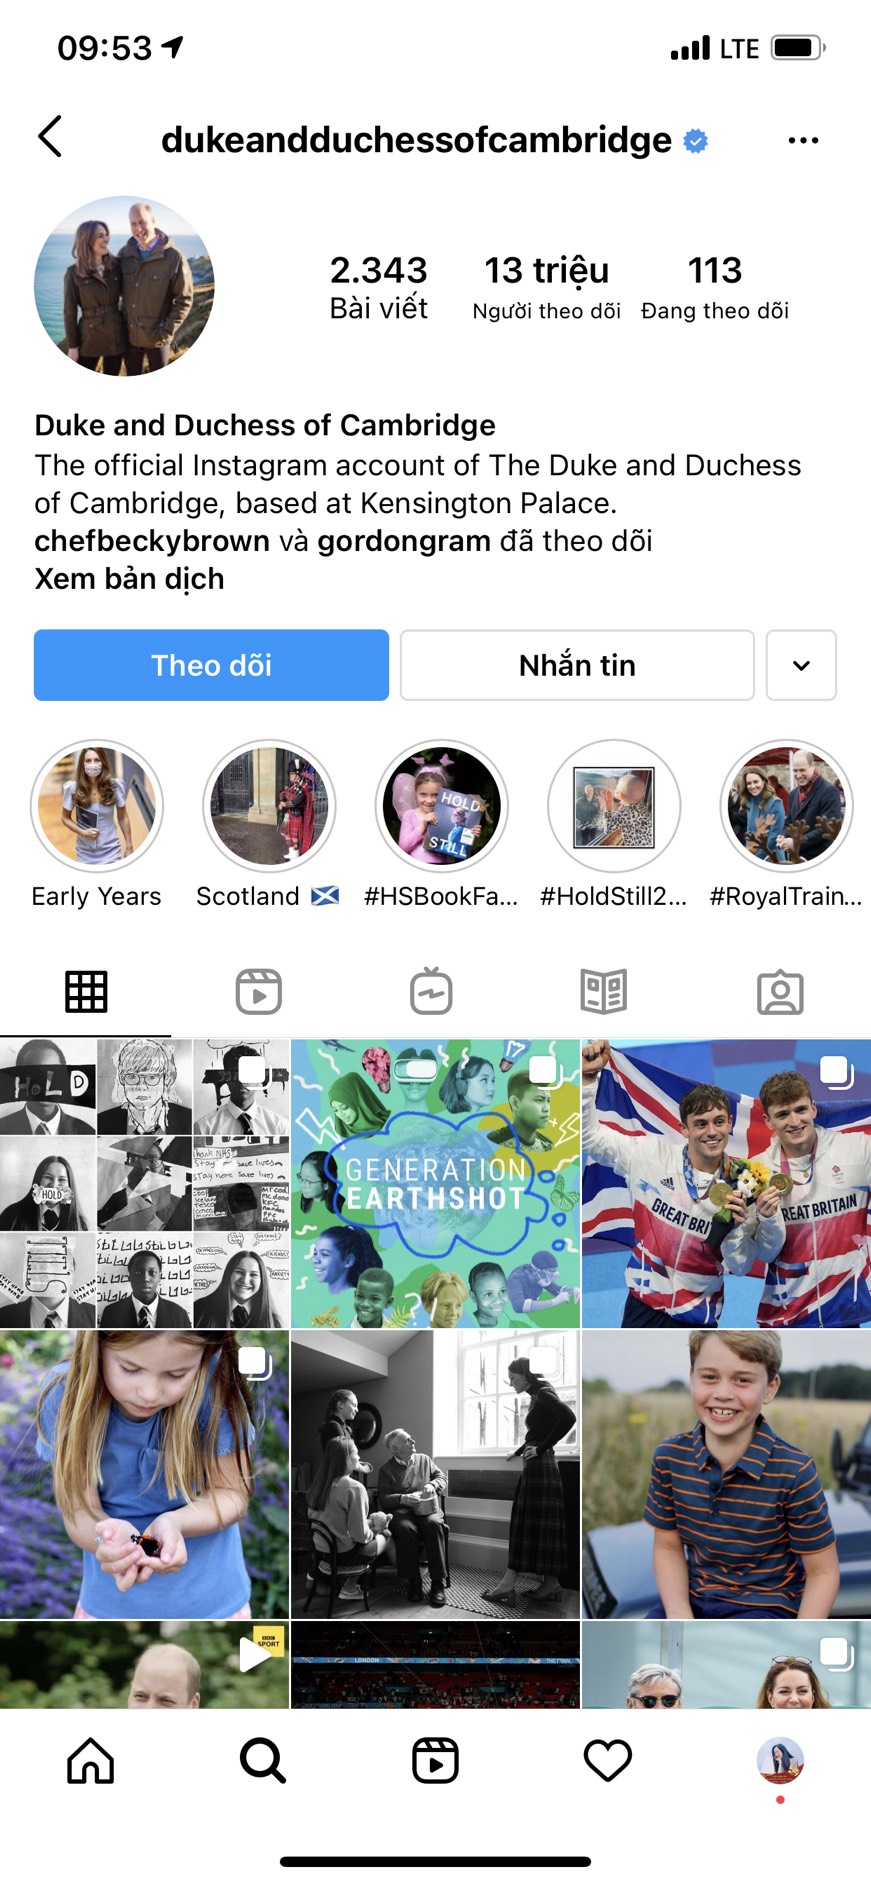 Tài khoản Instagram của nhà Cambridge hiện cán mốc 13 triệu người theo dõi